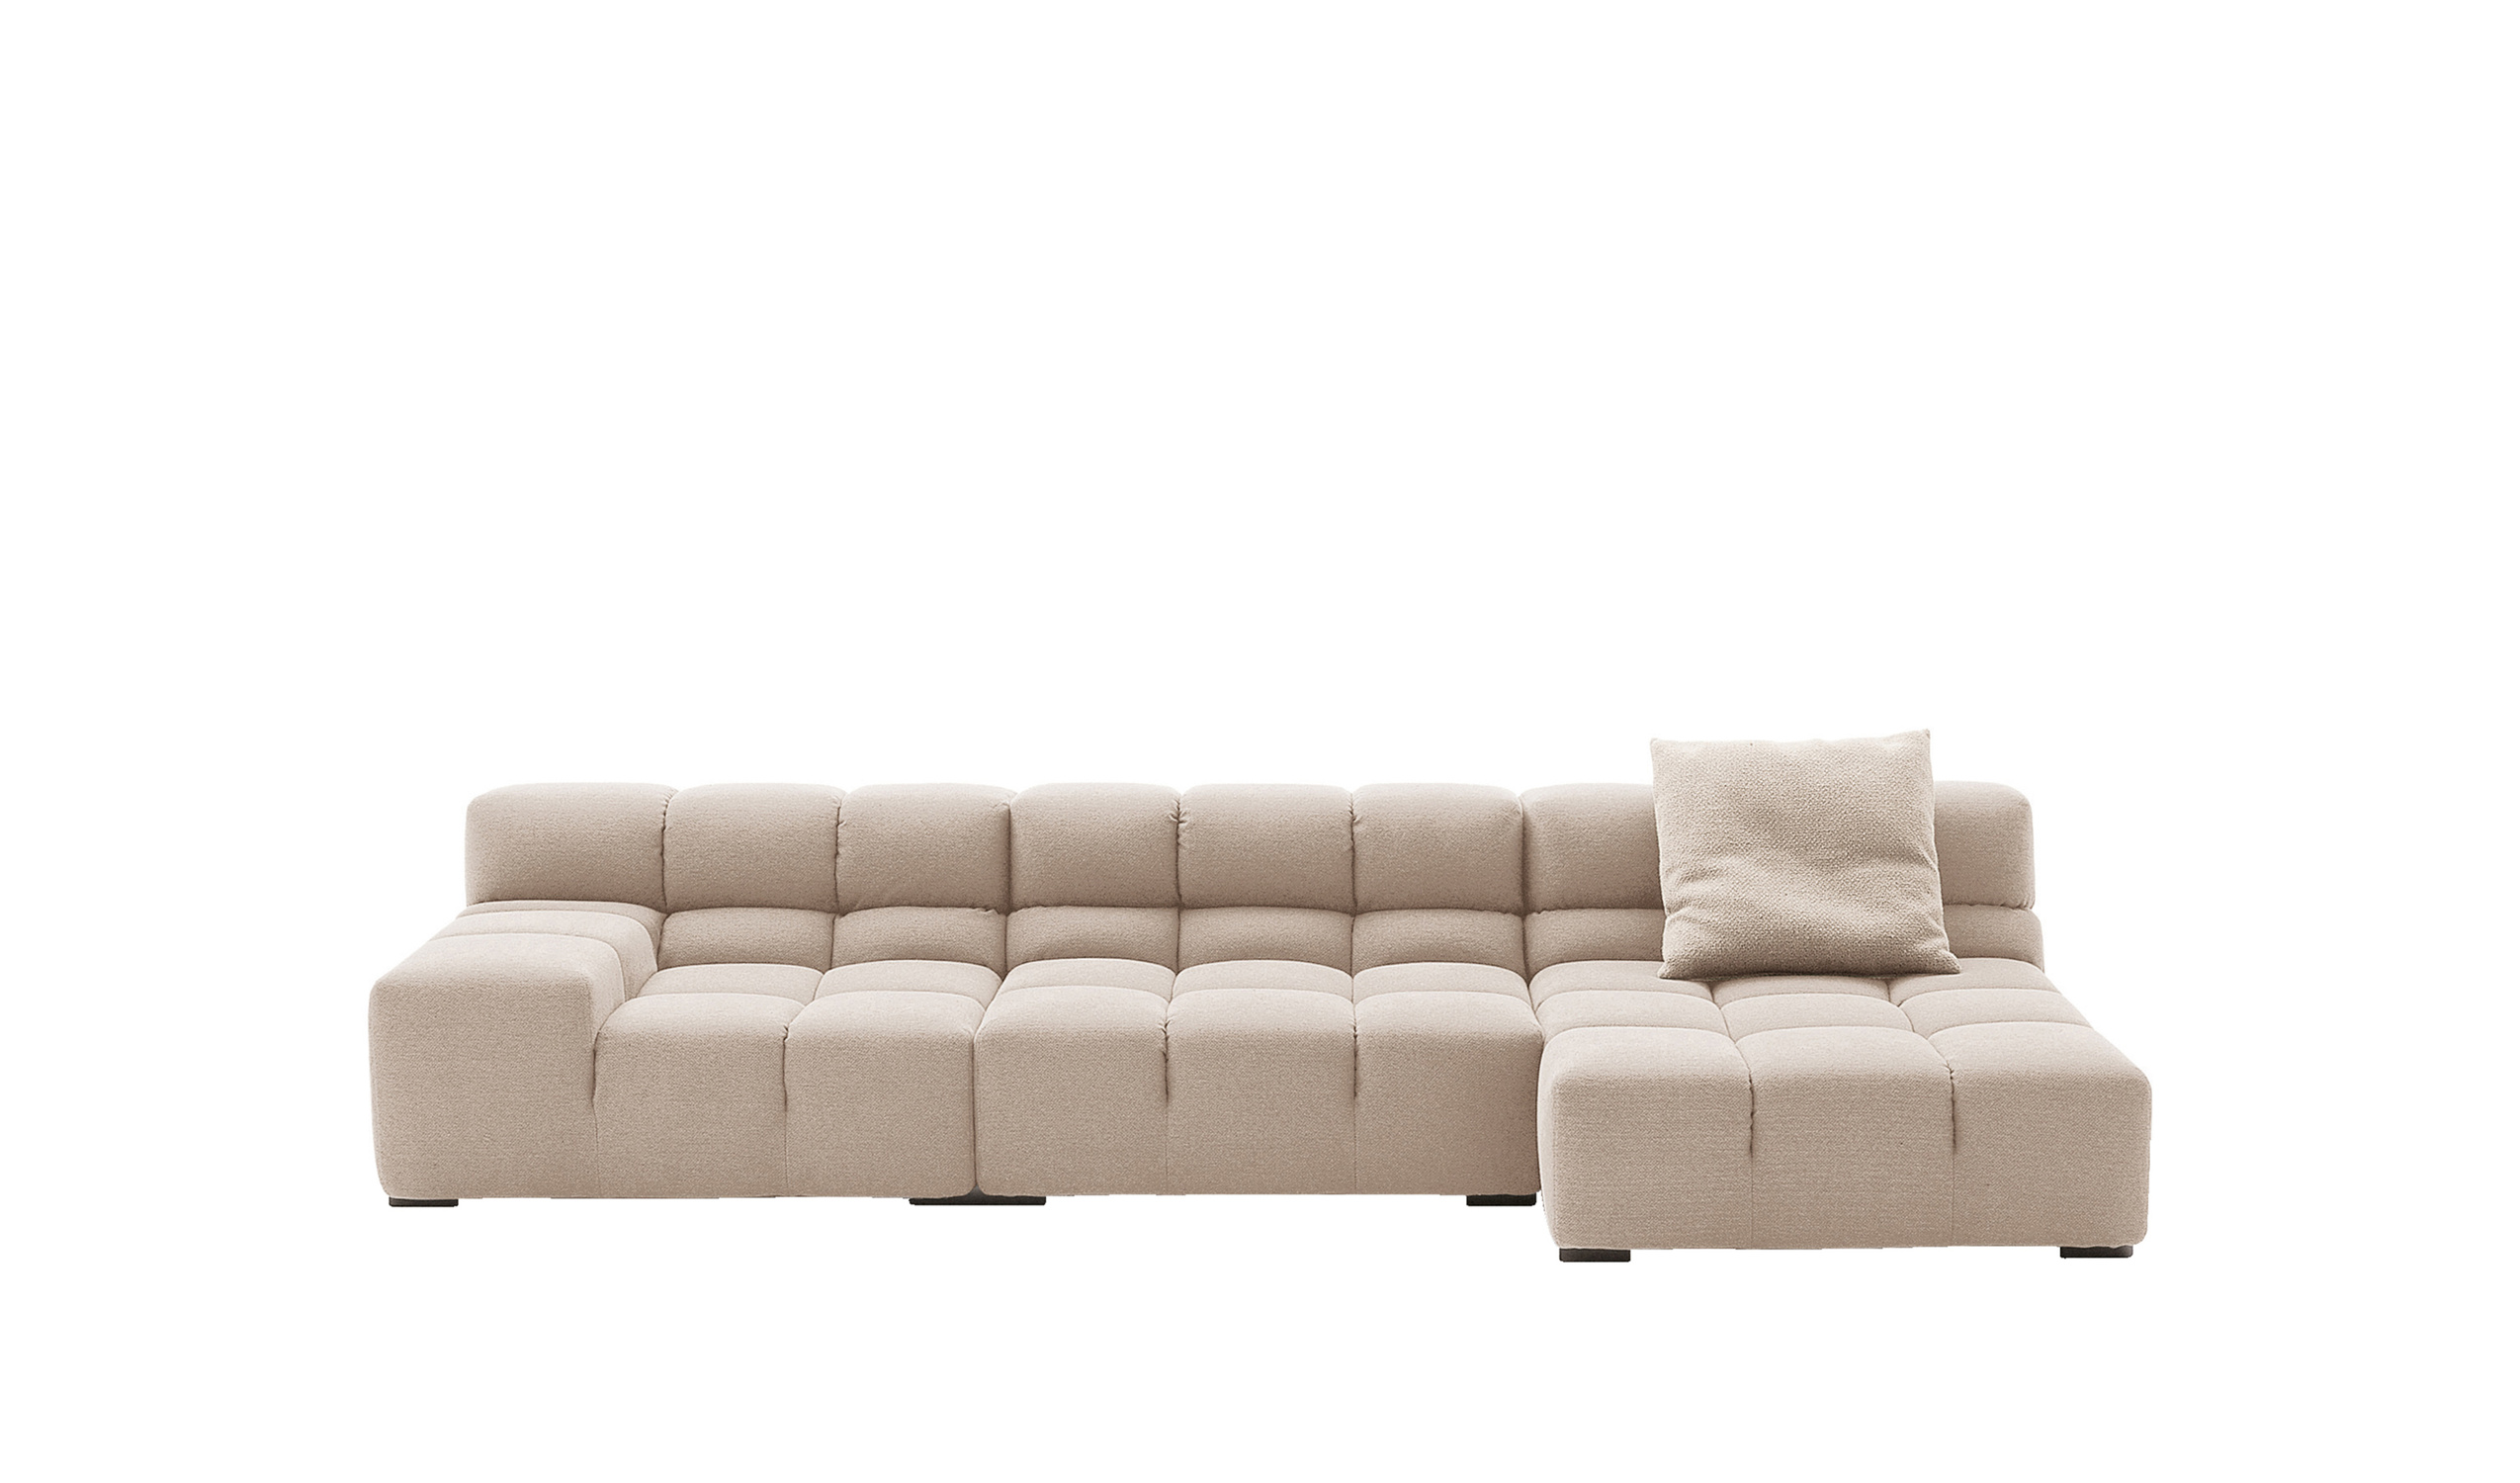 Modern designer italian sofas - Tufty-Time Sofas 3